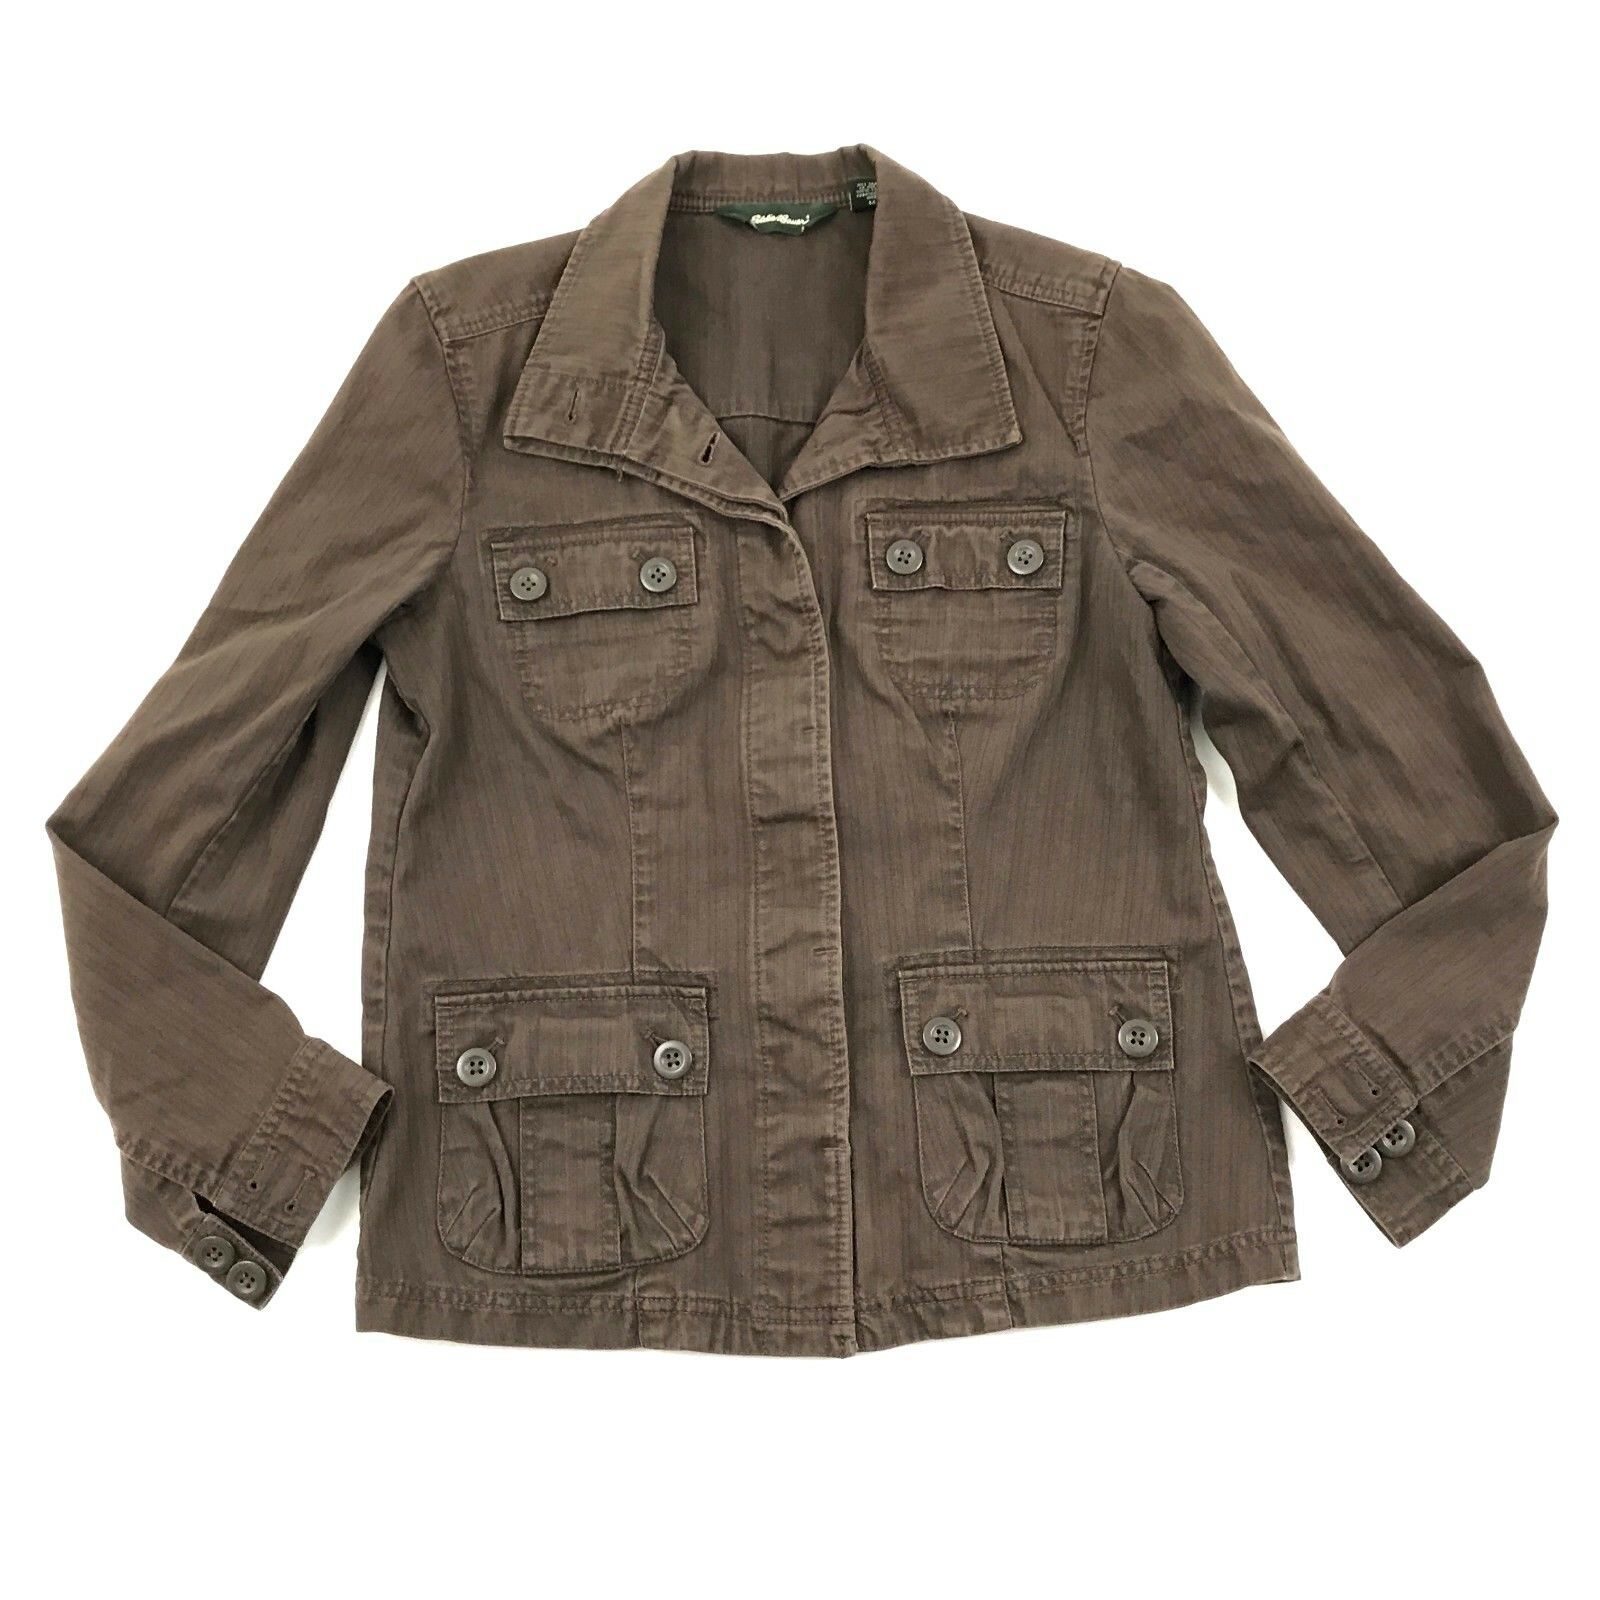 VINTAGE Eddie Bauer Chore Jacket Women's Size Medium M Military Style ...